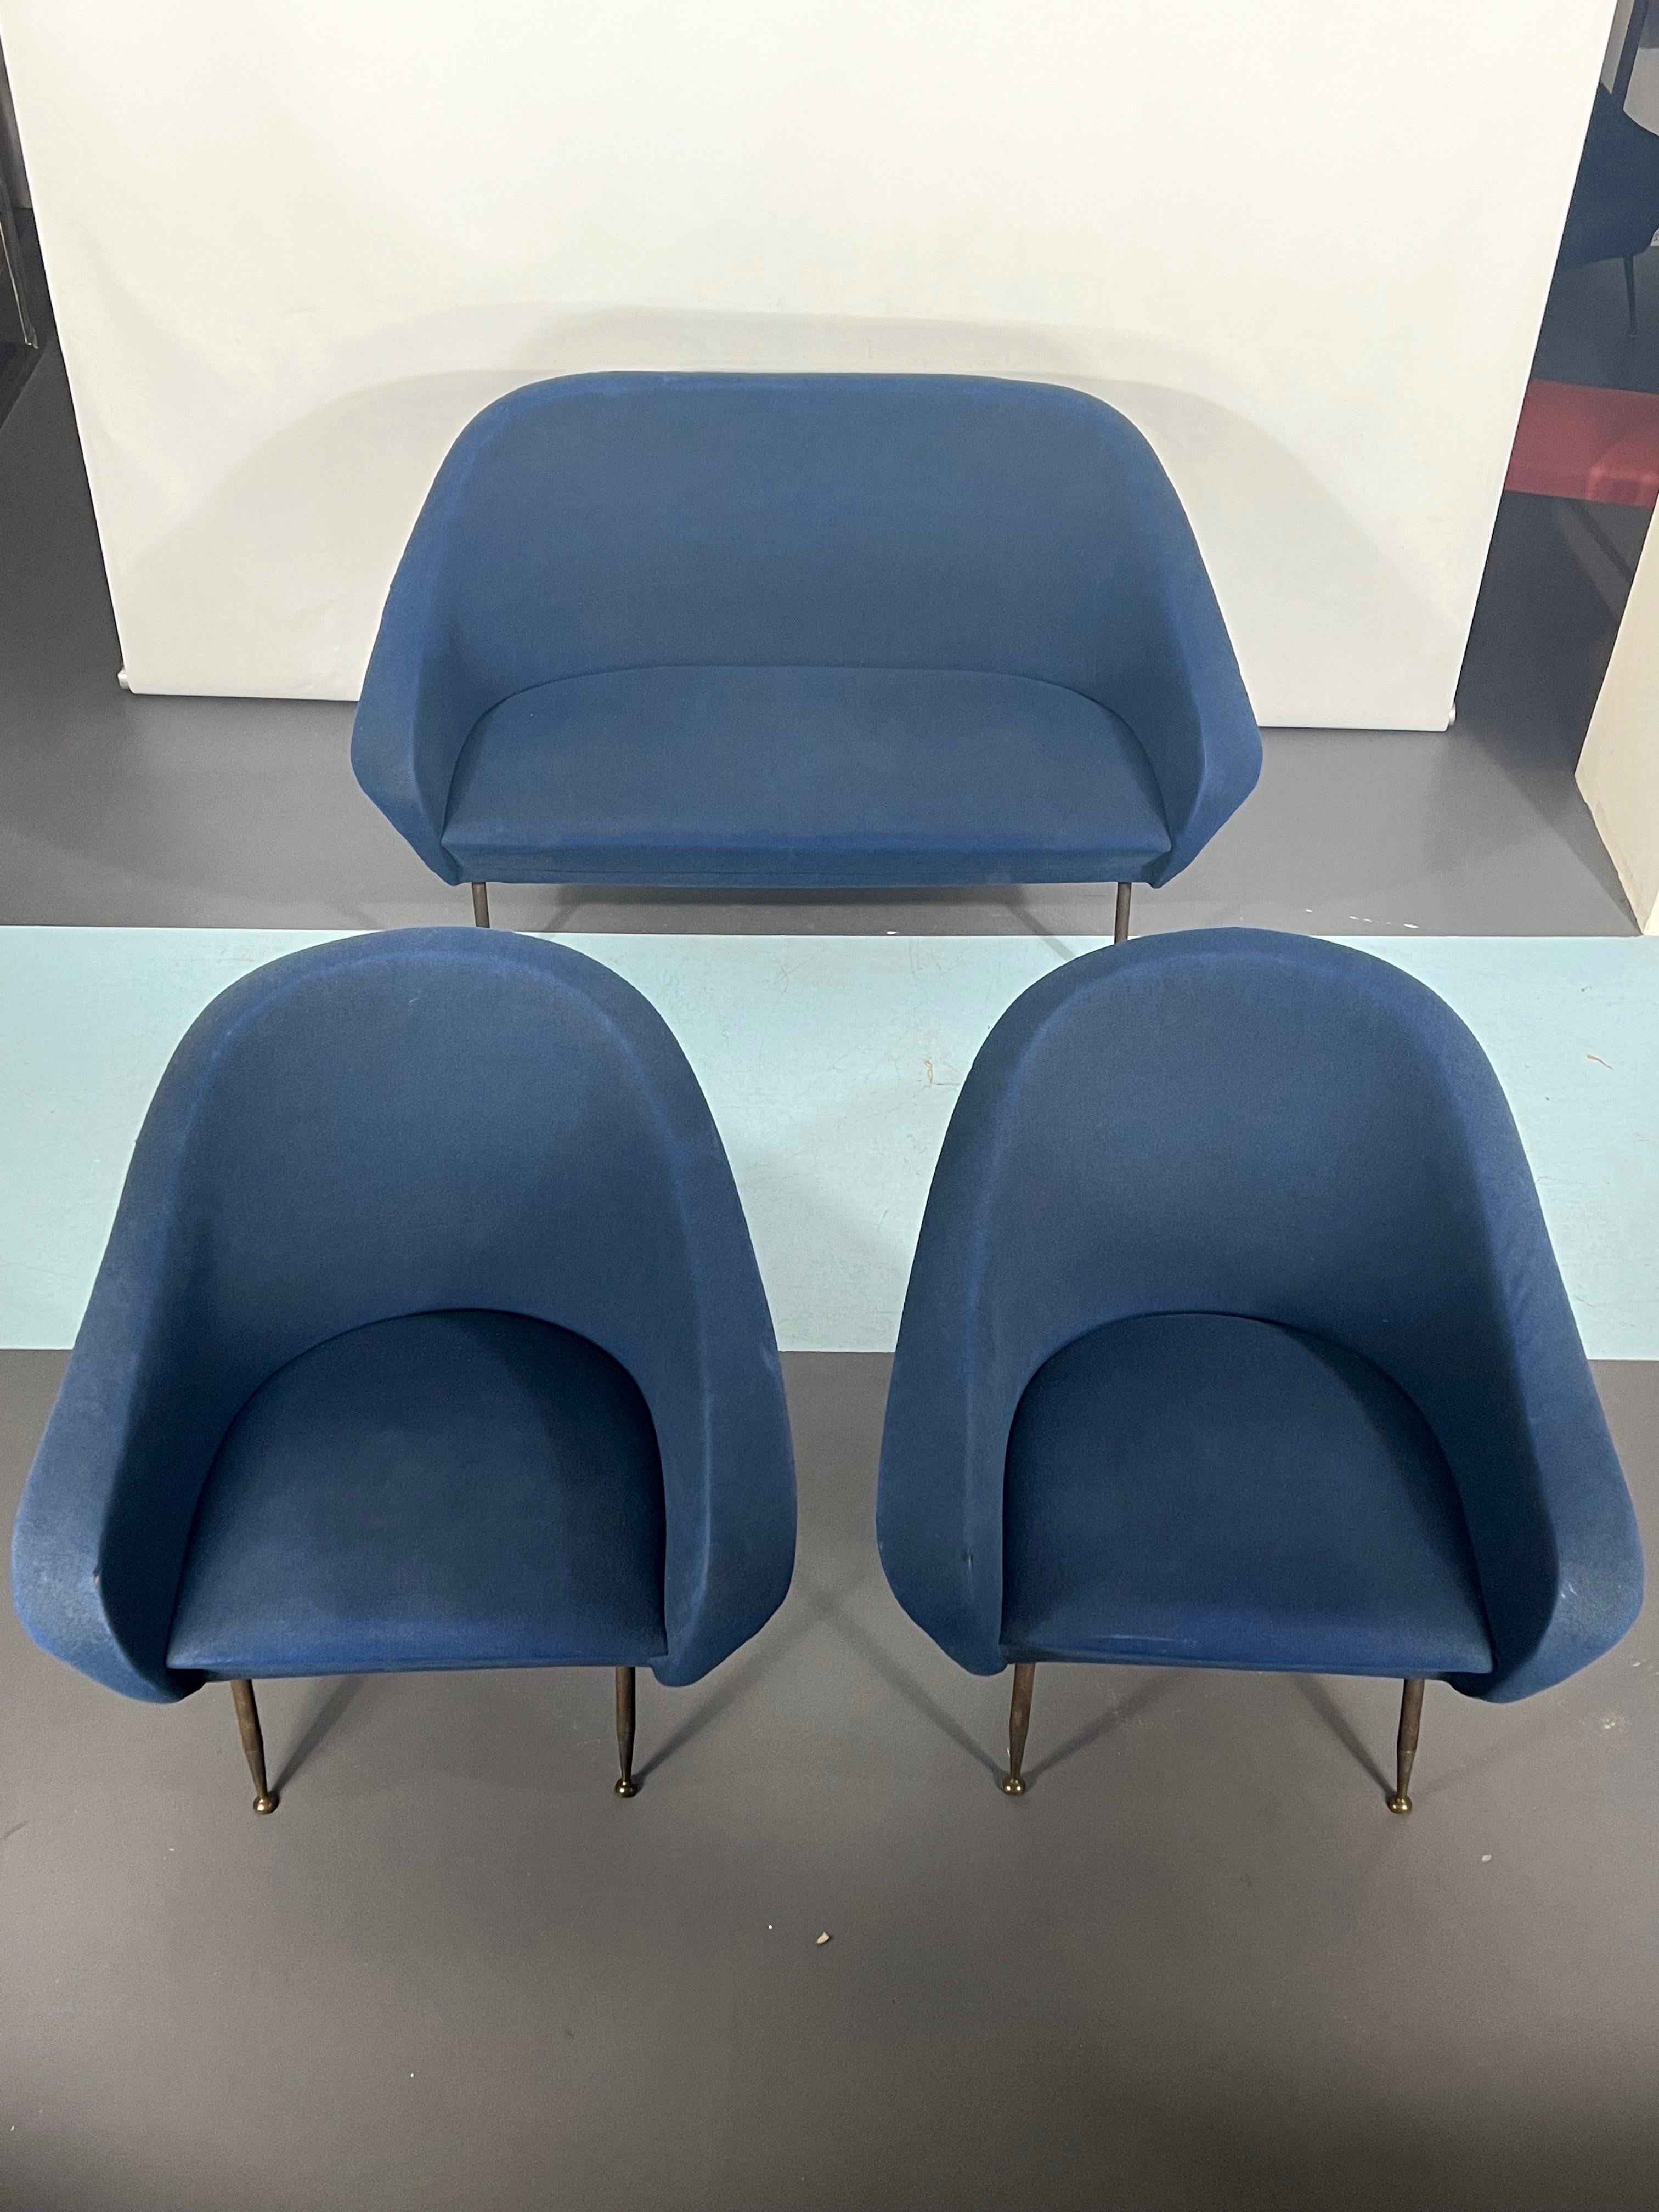 Original Vintage-Zustand mit einigen Mängeln auf dem Stoff für dieses Set von einem Sofa und zwei Sesseln von Gastone Rinaldi entworfen und produziert von seiner Fabrik RIMA in den 50er Jahren.